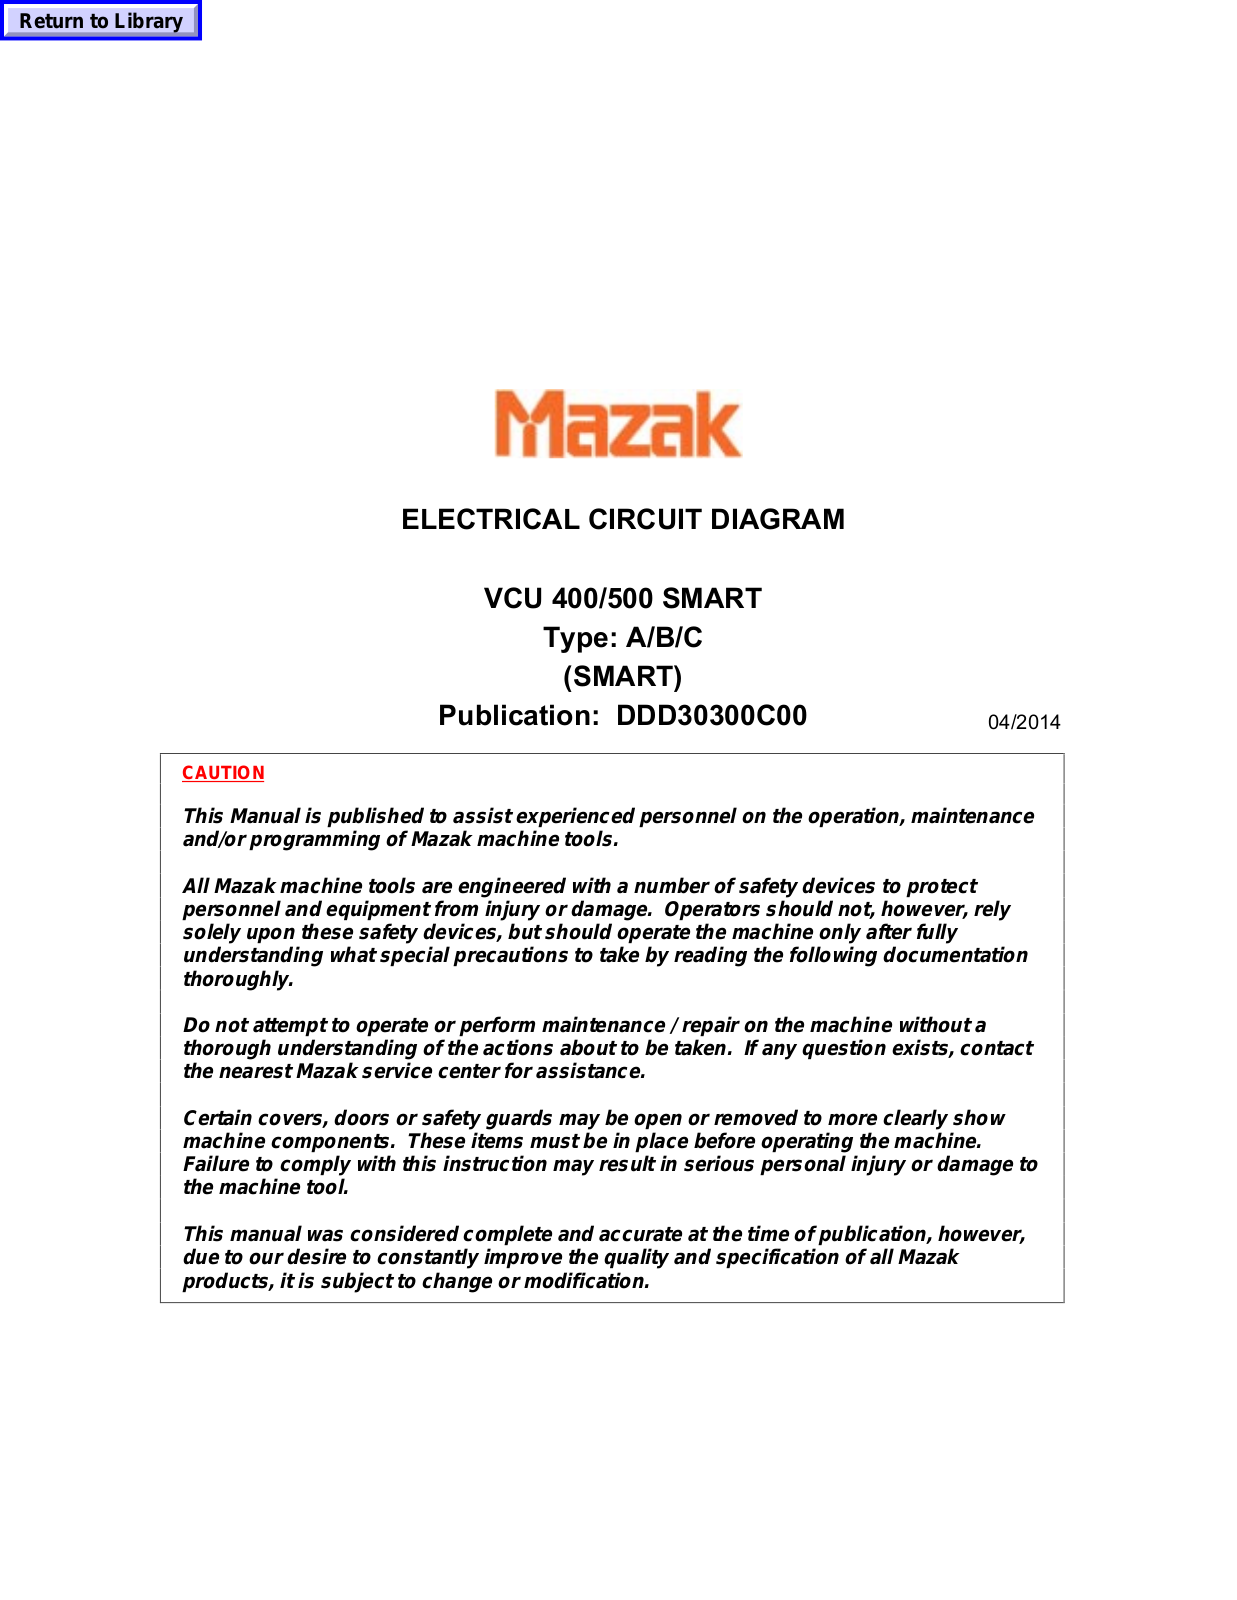 Mazak VCU 400, VCU 500 User Manual